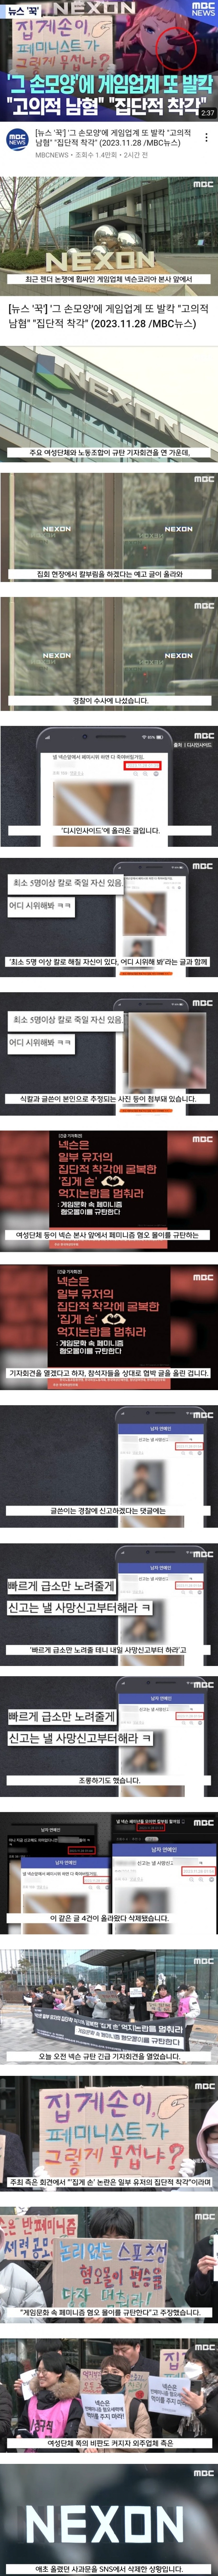 남혐 게임 사건에 대한 MBC의 보도 - 5